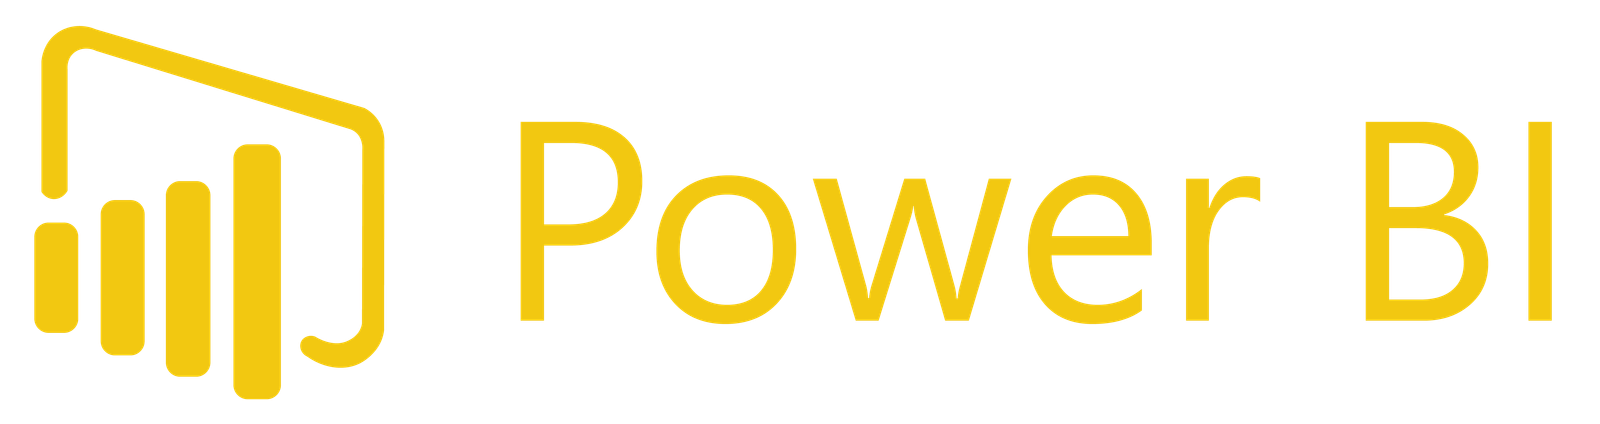 power-bi_logo